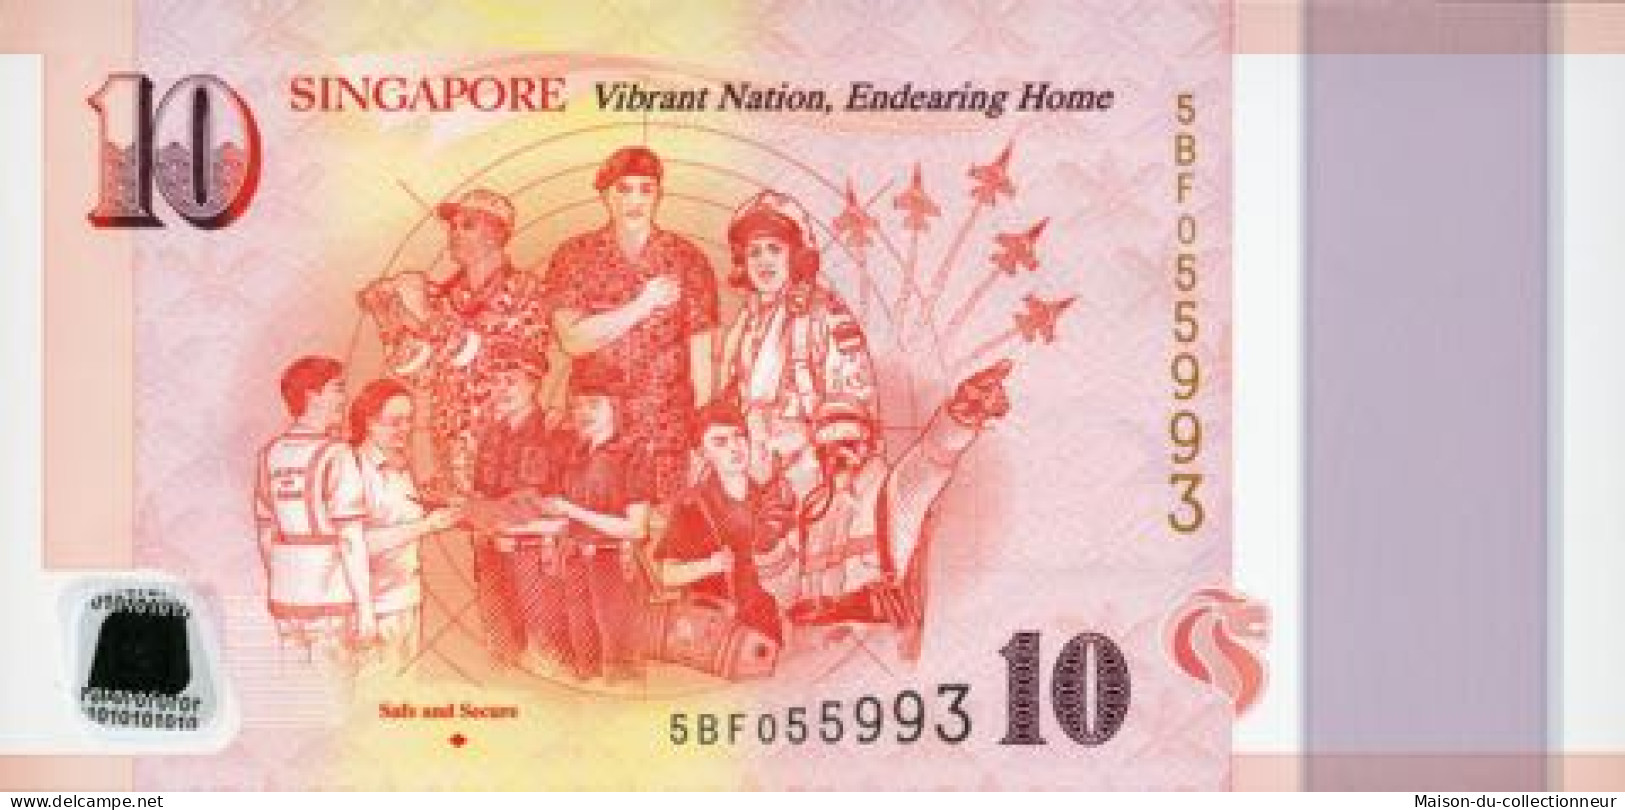 Singapour Billet de banque collection - Série de 6 billets